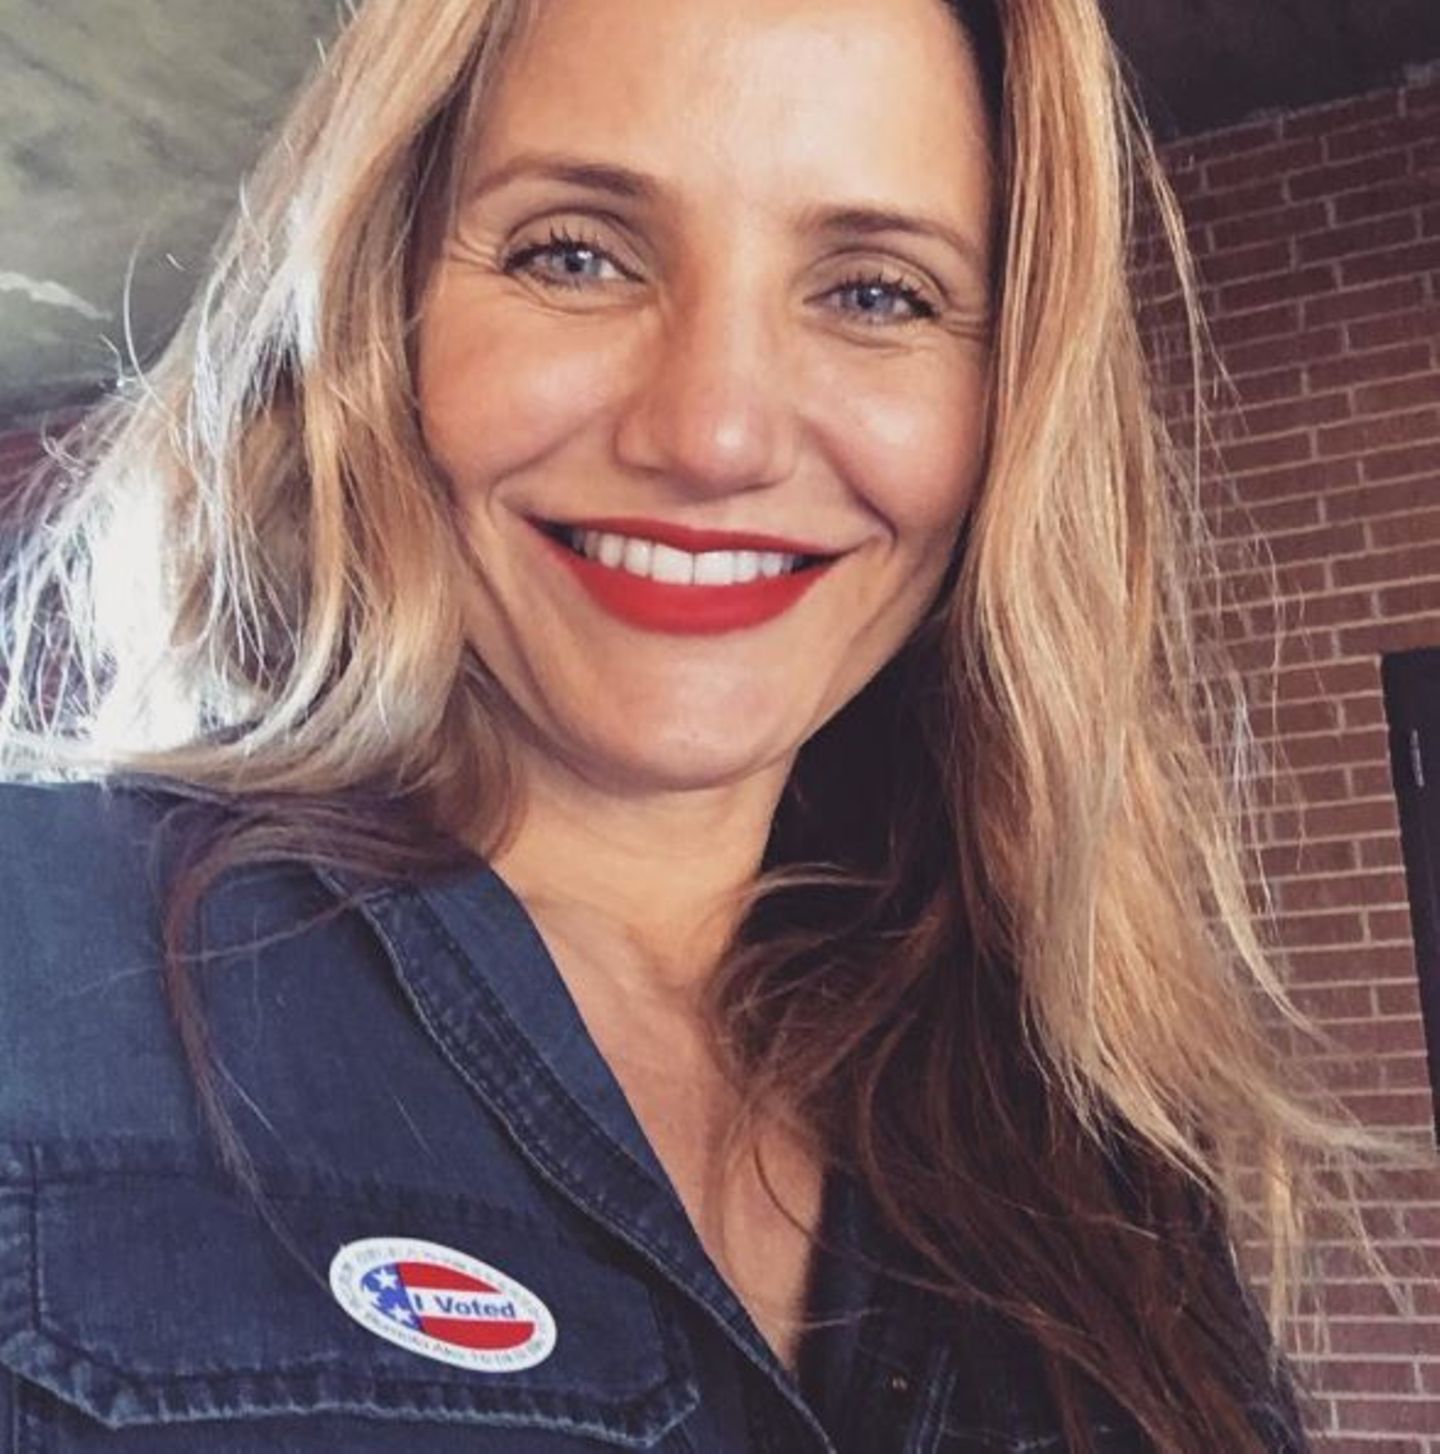 "Ich habe heute für ein Land gewählt, in dem ich leben will ... Ein Land, in dem es Gleichstellung, Integration, Akzeptanz und Freiheit gibt, die jeder Amerikaner verdient ... Bitte geht und wählt für das Amerika, in dem ihr leben wollt", schreibt Cameron Diaz zu ihrem Selfie.